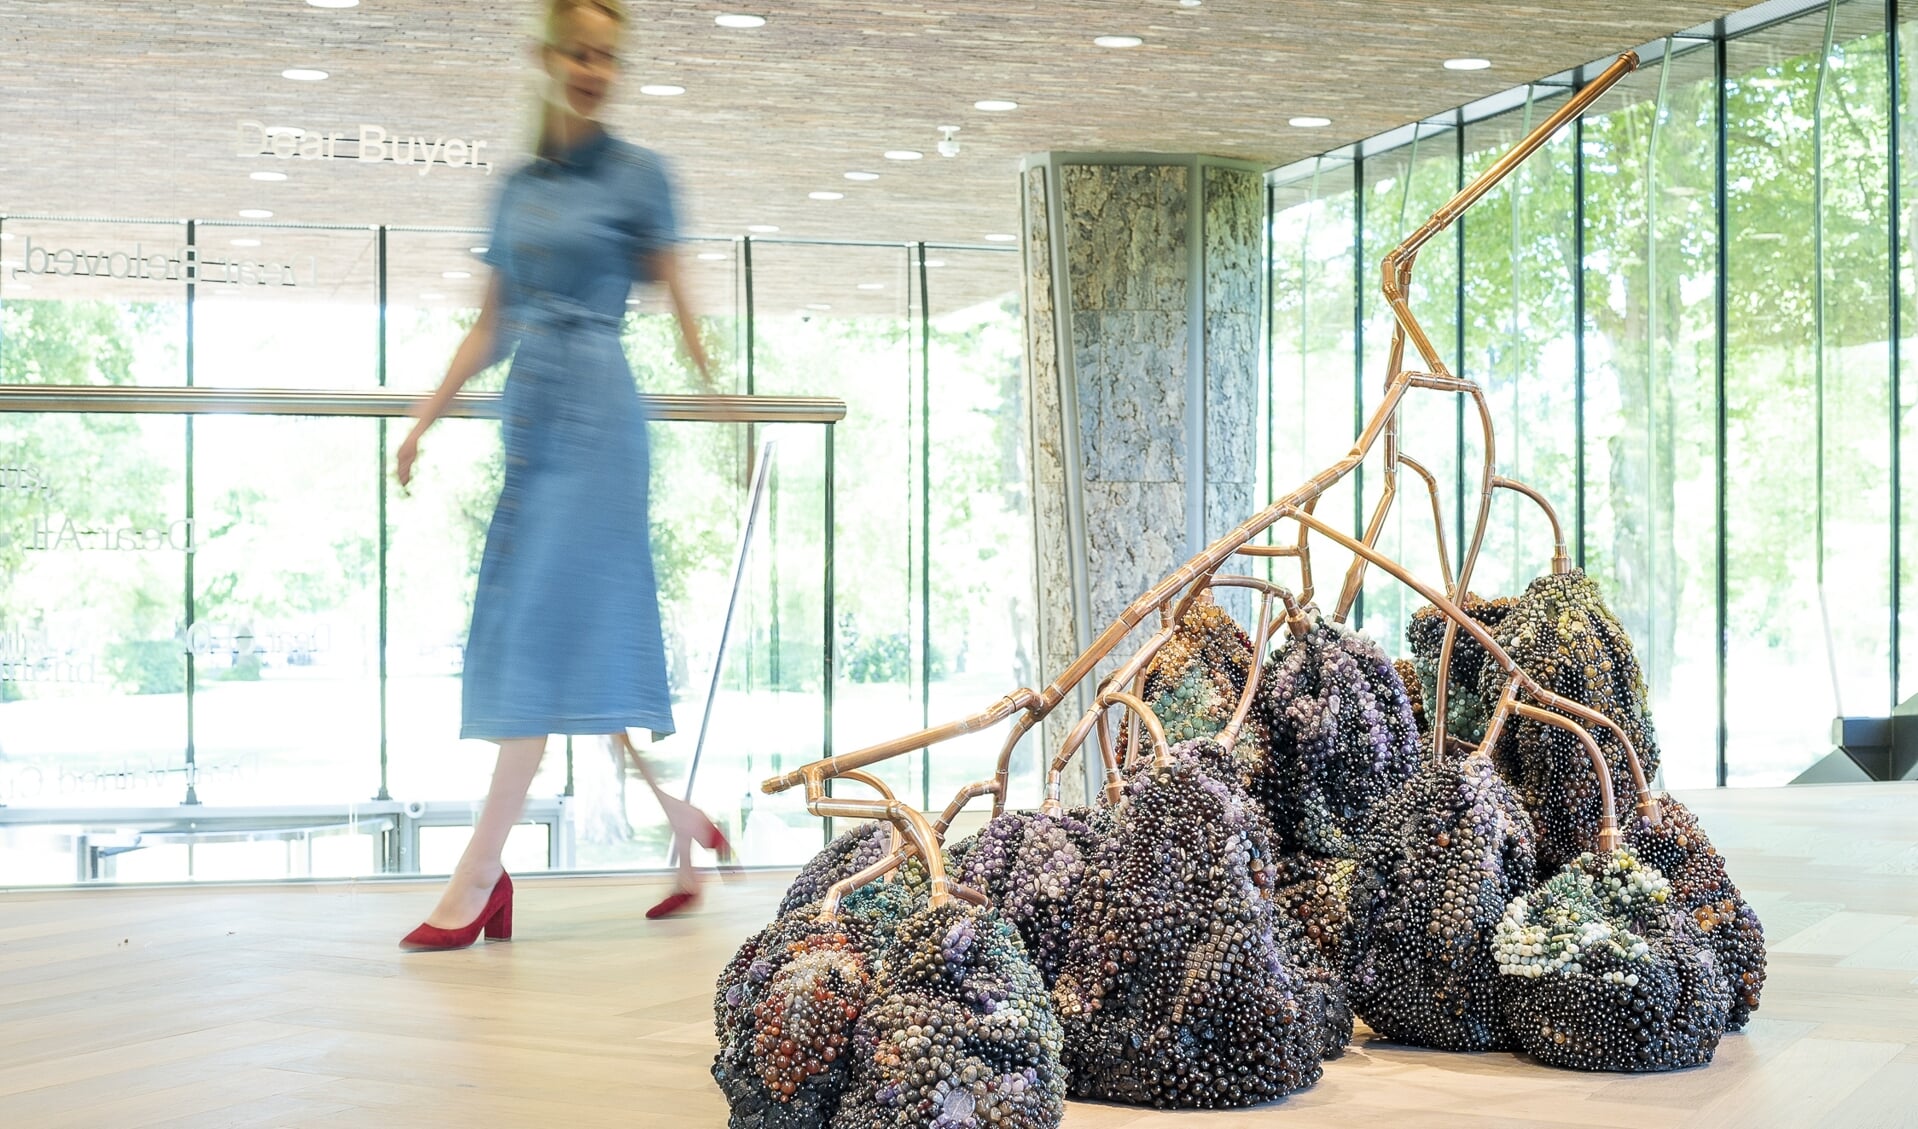 De enorme druiventros van kunstenaar Kathleen Ryan ziet er beschimmeld en verschrompeld uit. Maar is dat ook zo?